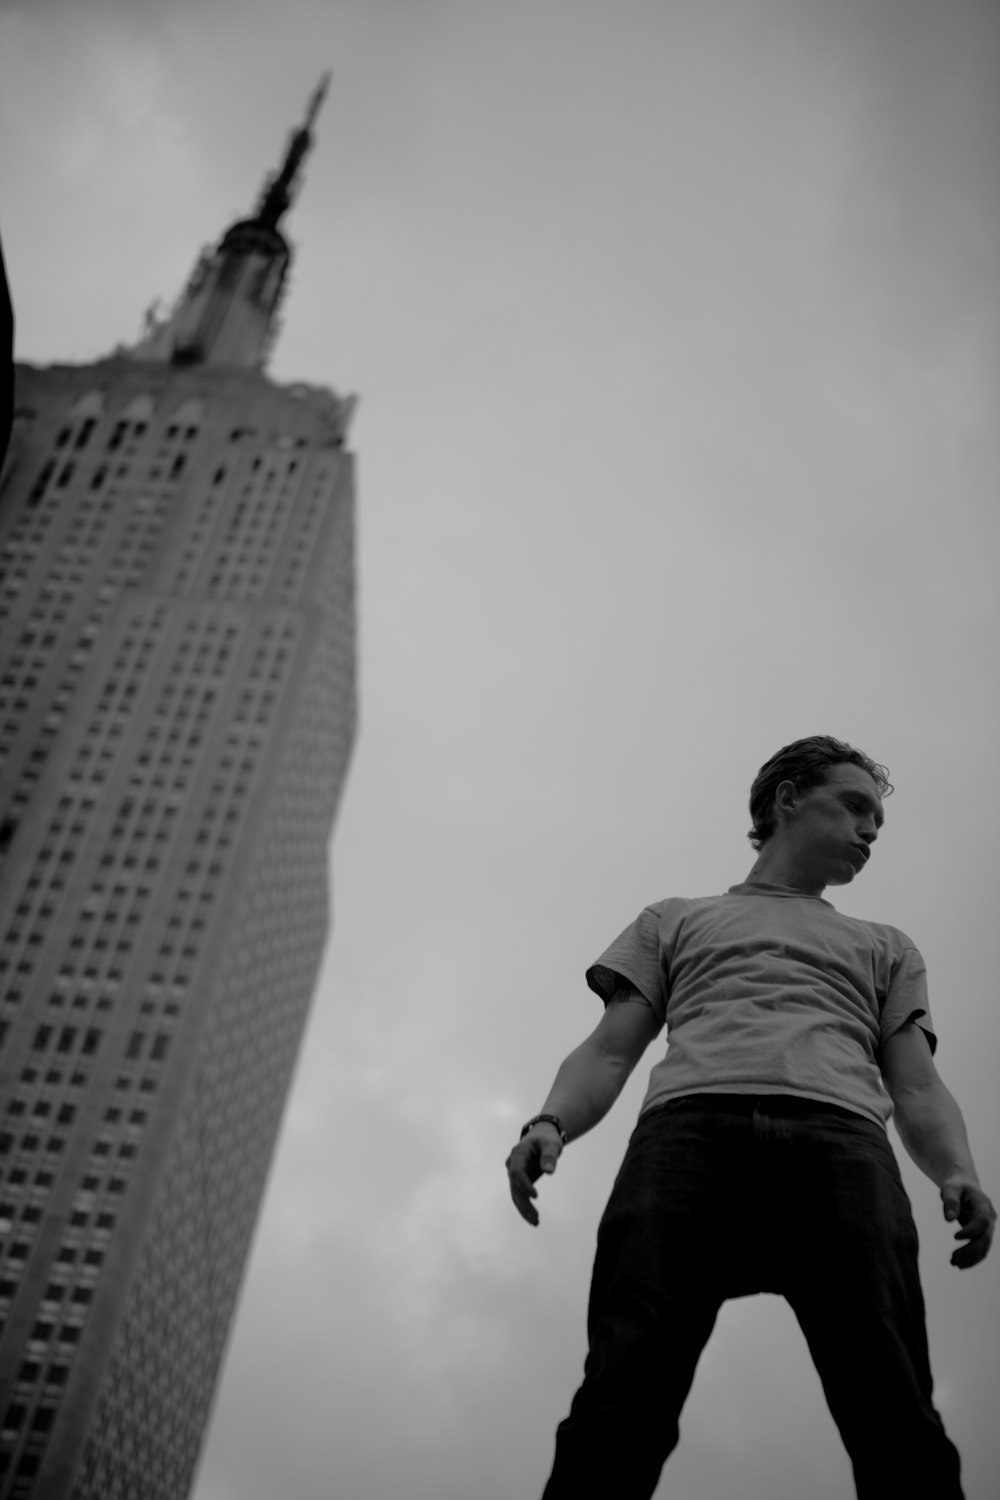 建物の近くに立っている男性のグレースケール低角度写真